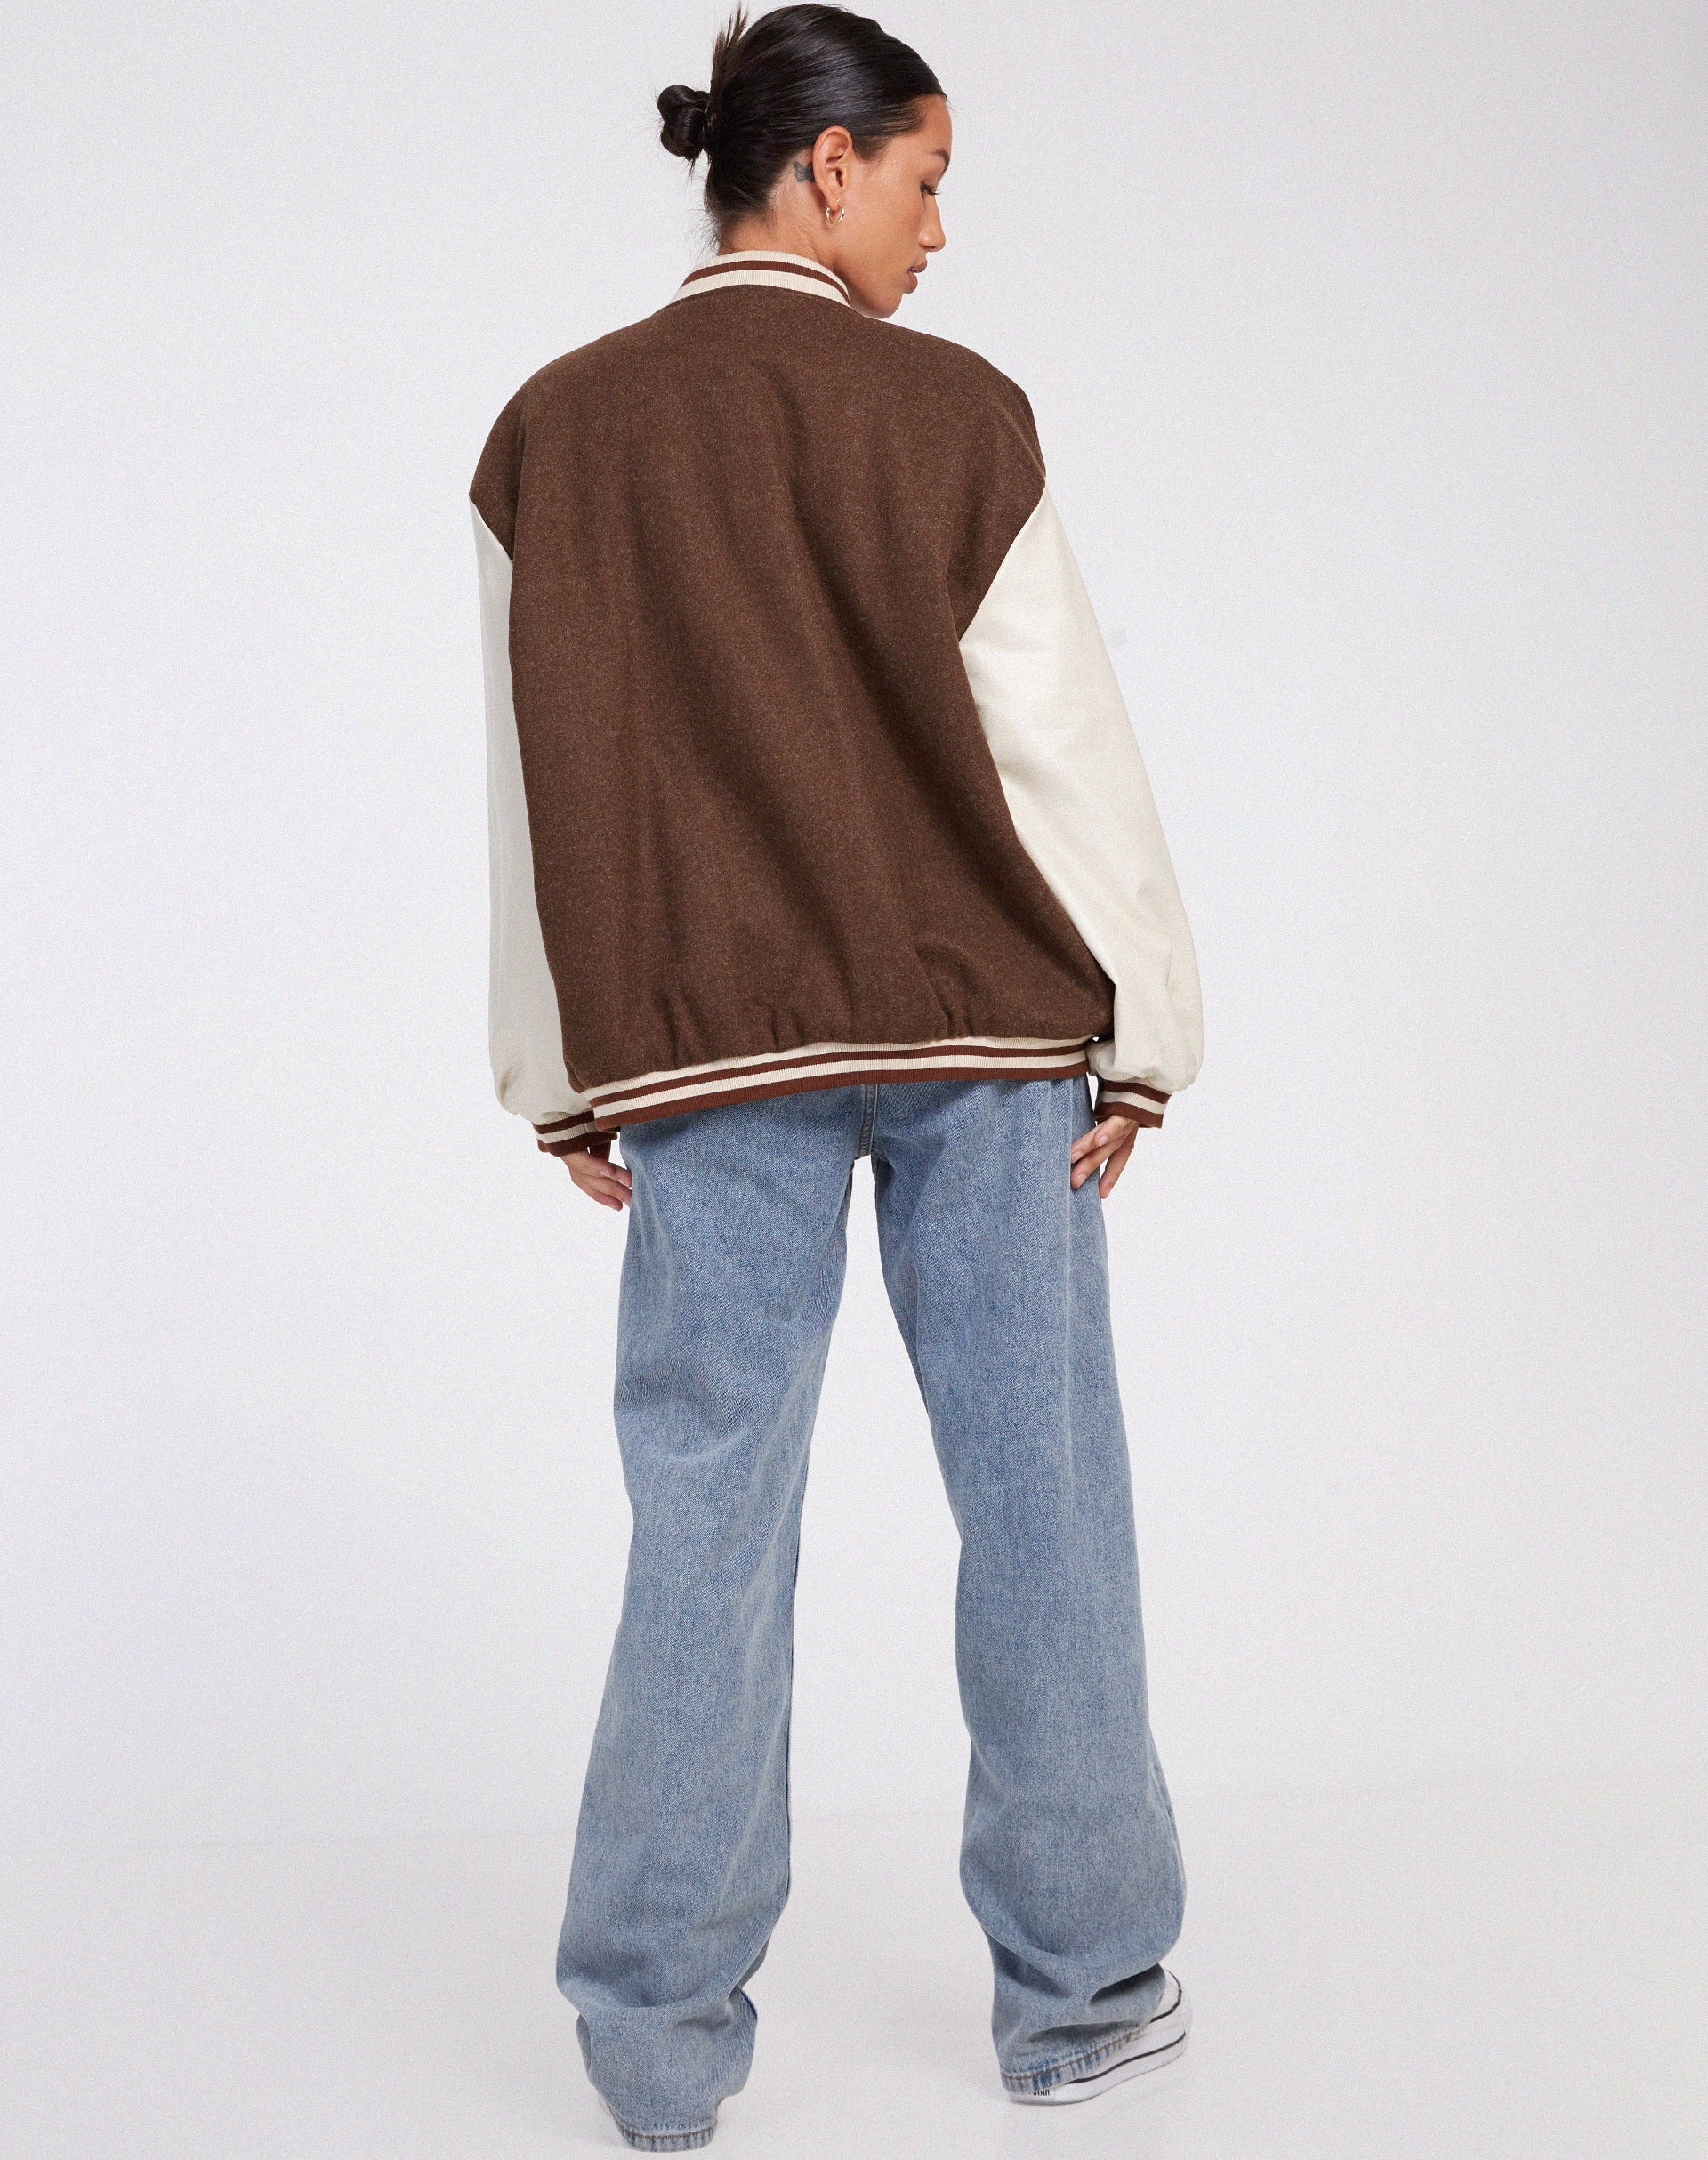 Image of Bama Varsity Jacket in Brown Beige